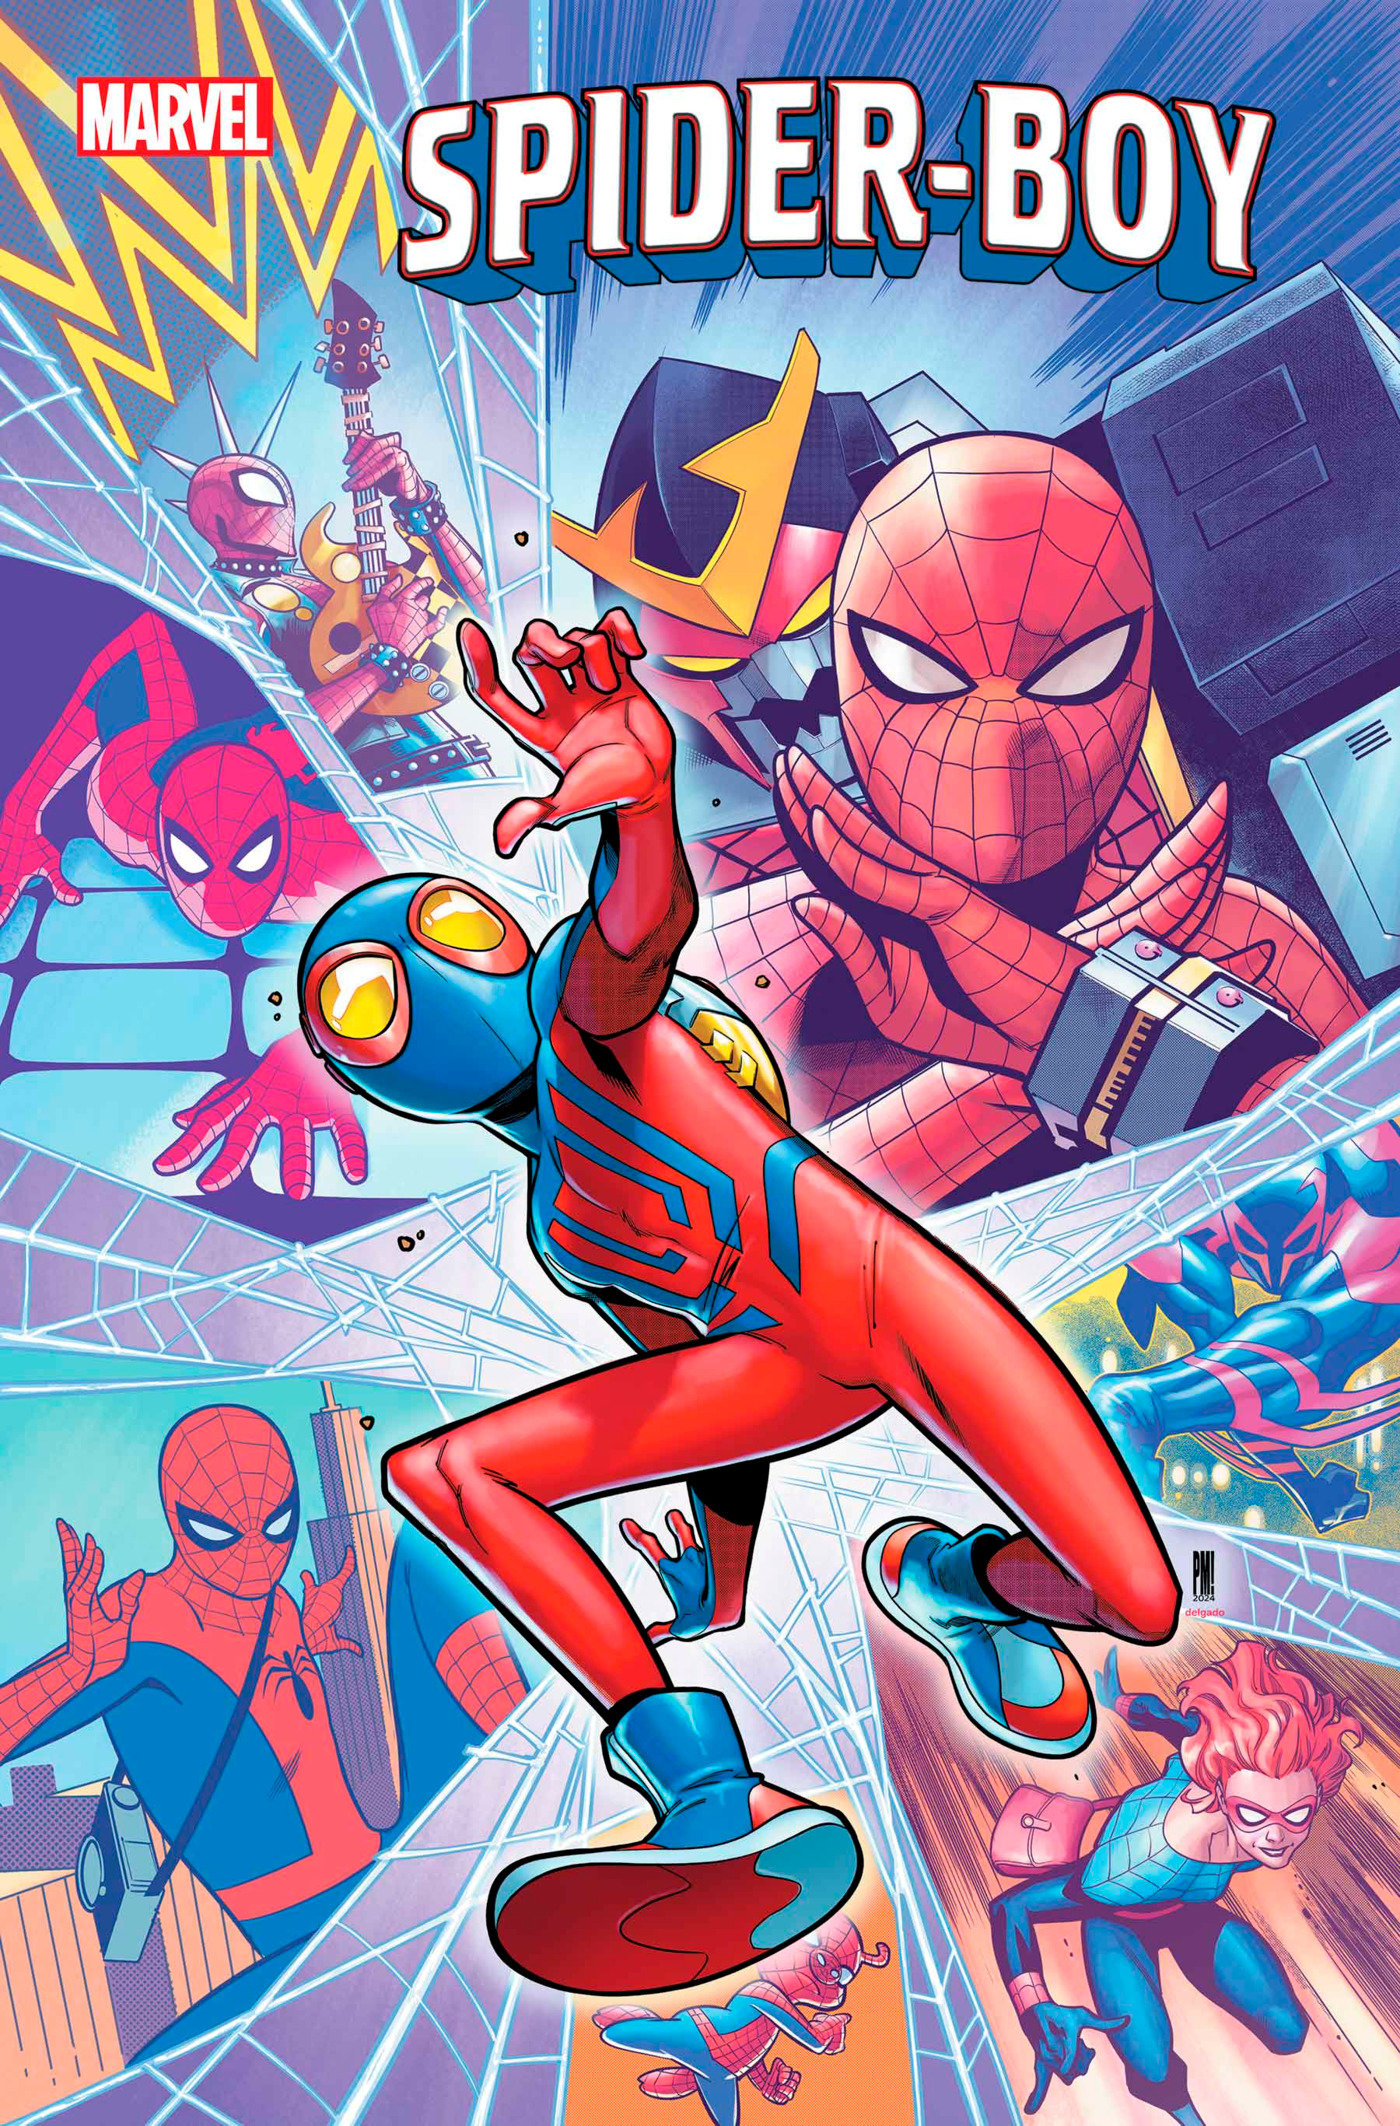 Spider-Boy #9